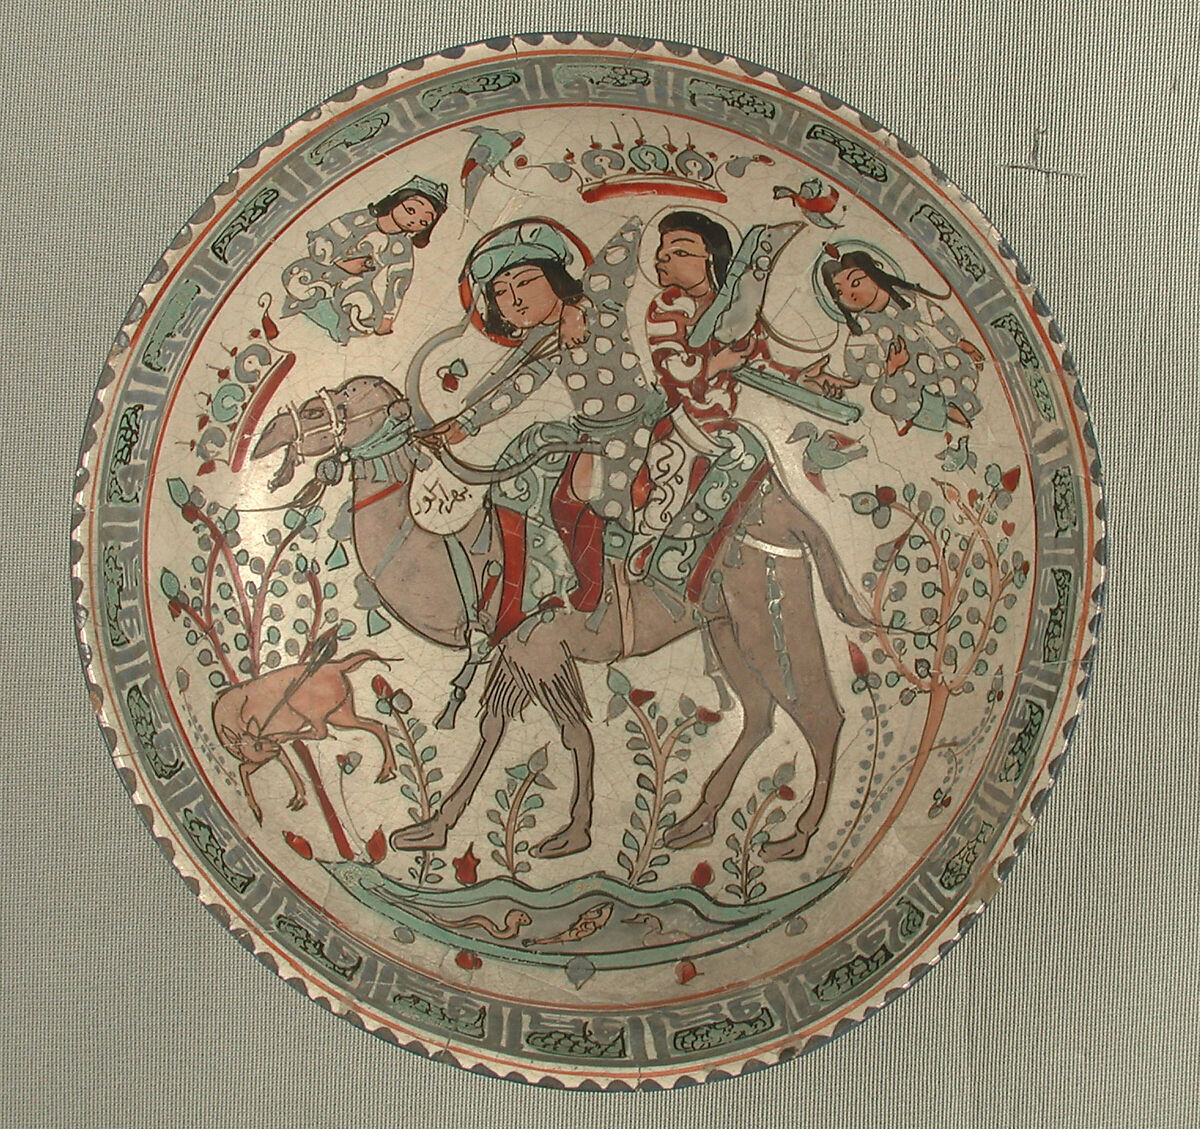 Bowl, Stonepaste; overglaze painted, so-called "mina'i" ware 